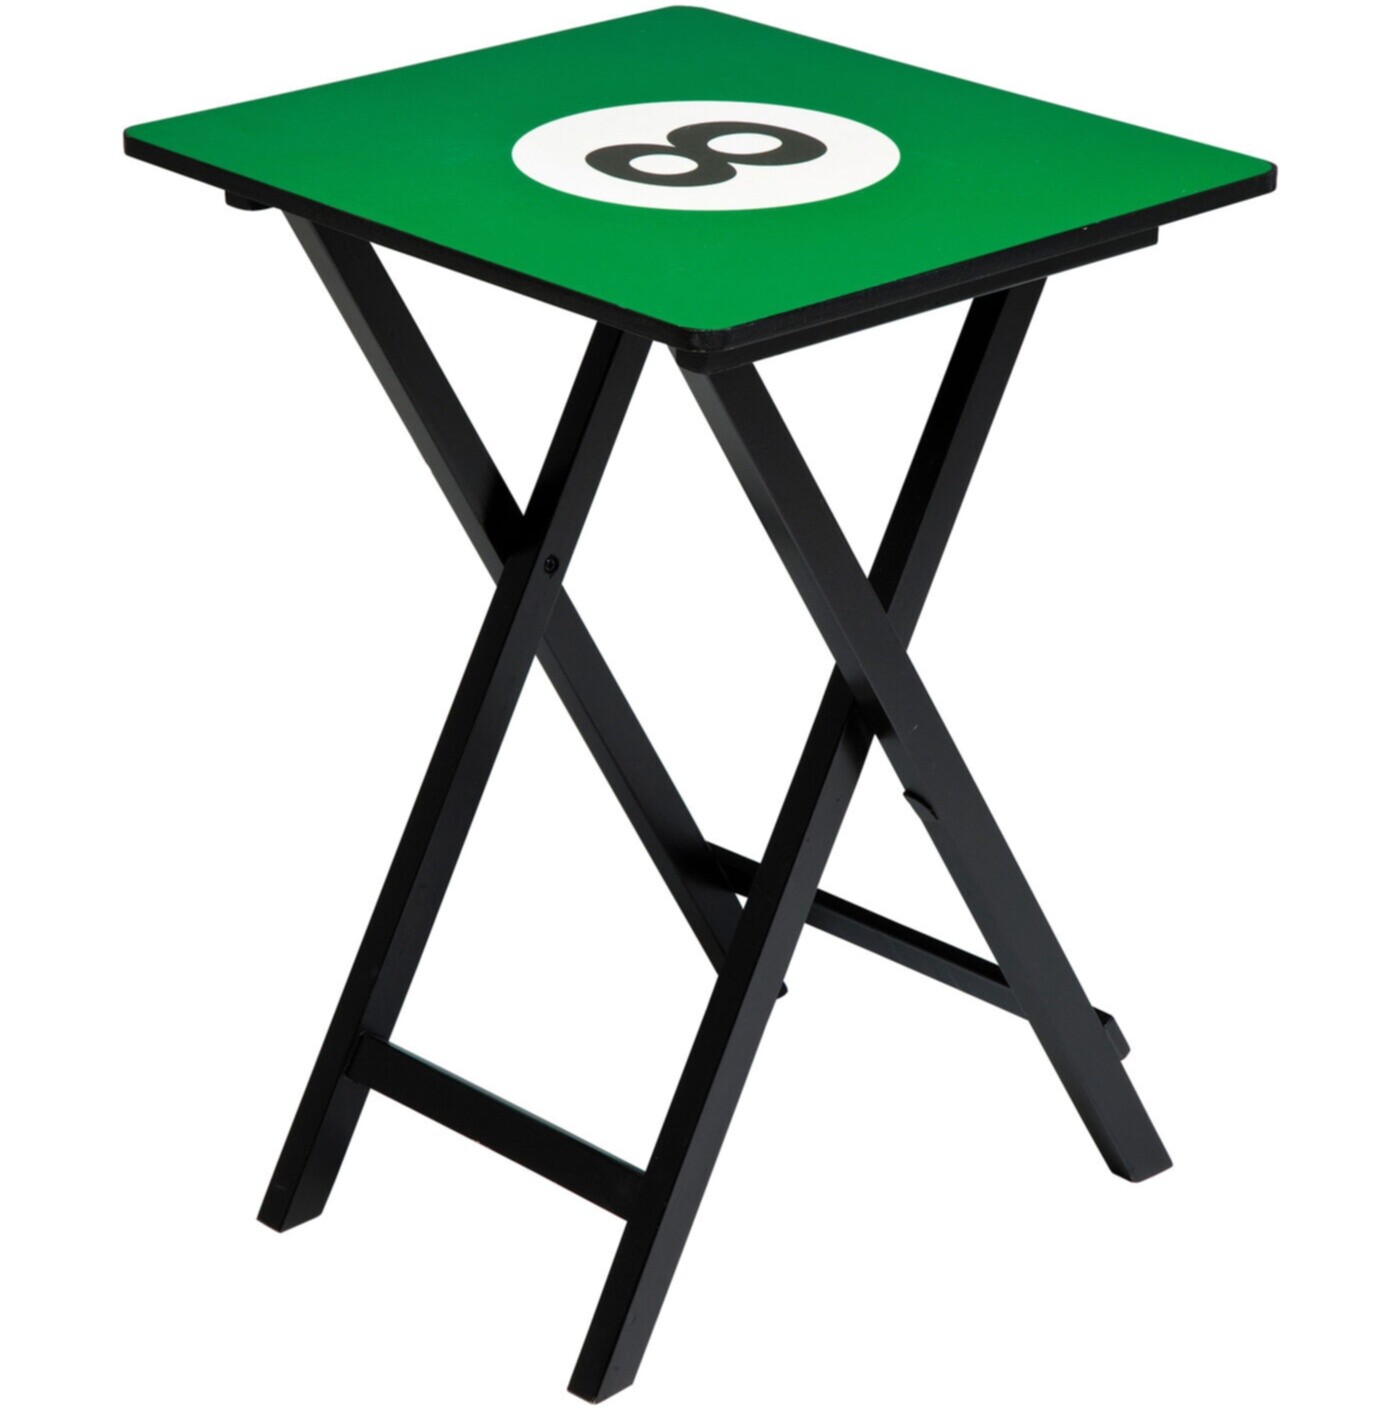 Приставной столик складной зеленый с черными ножками 40 см Еight 77727